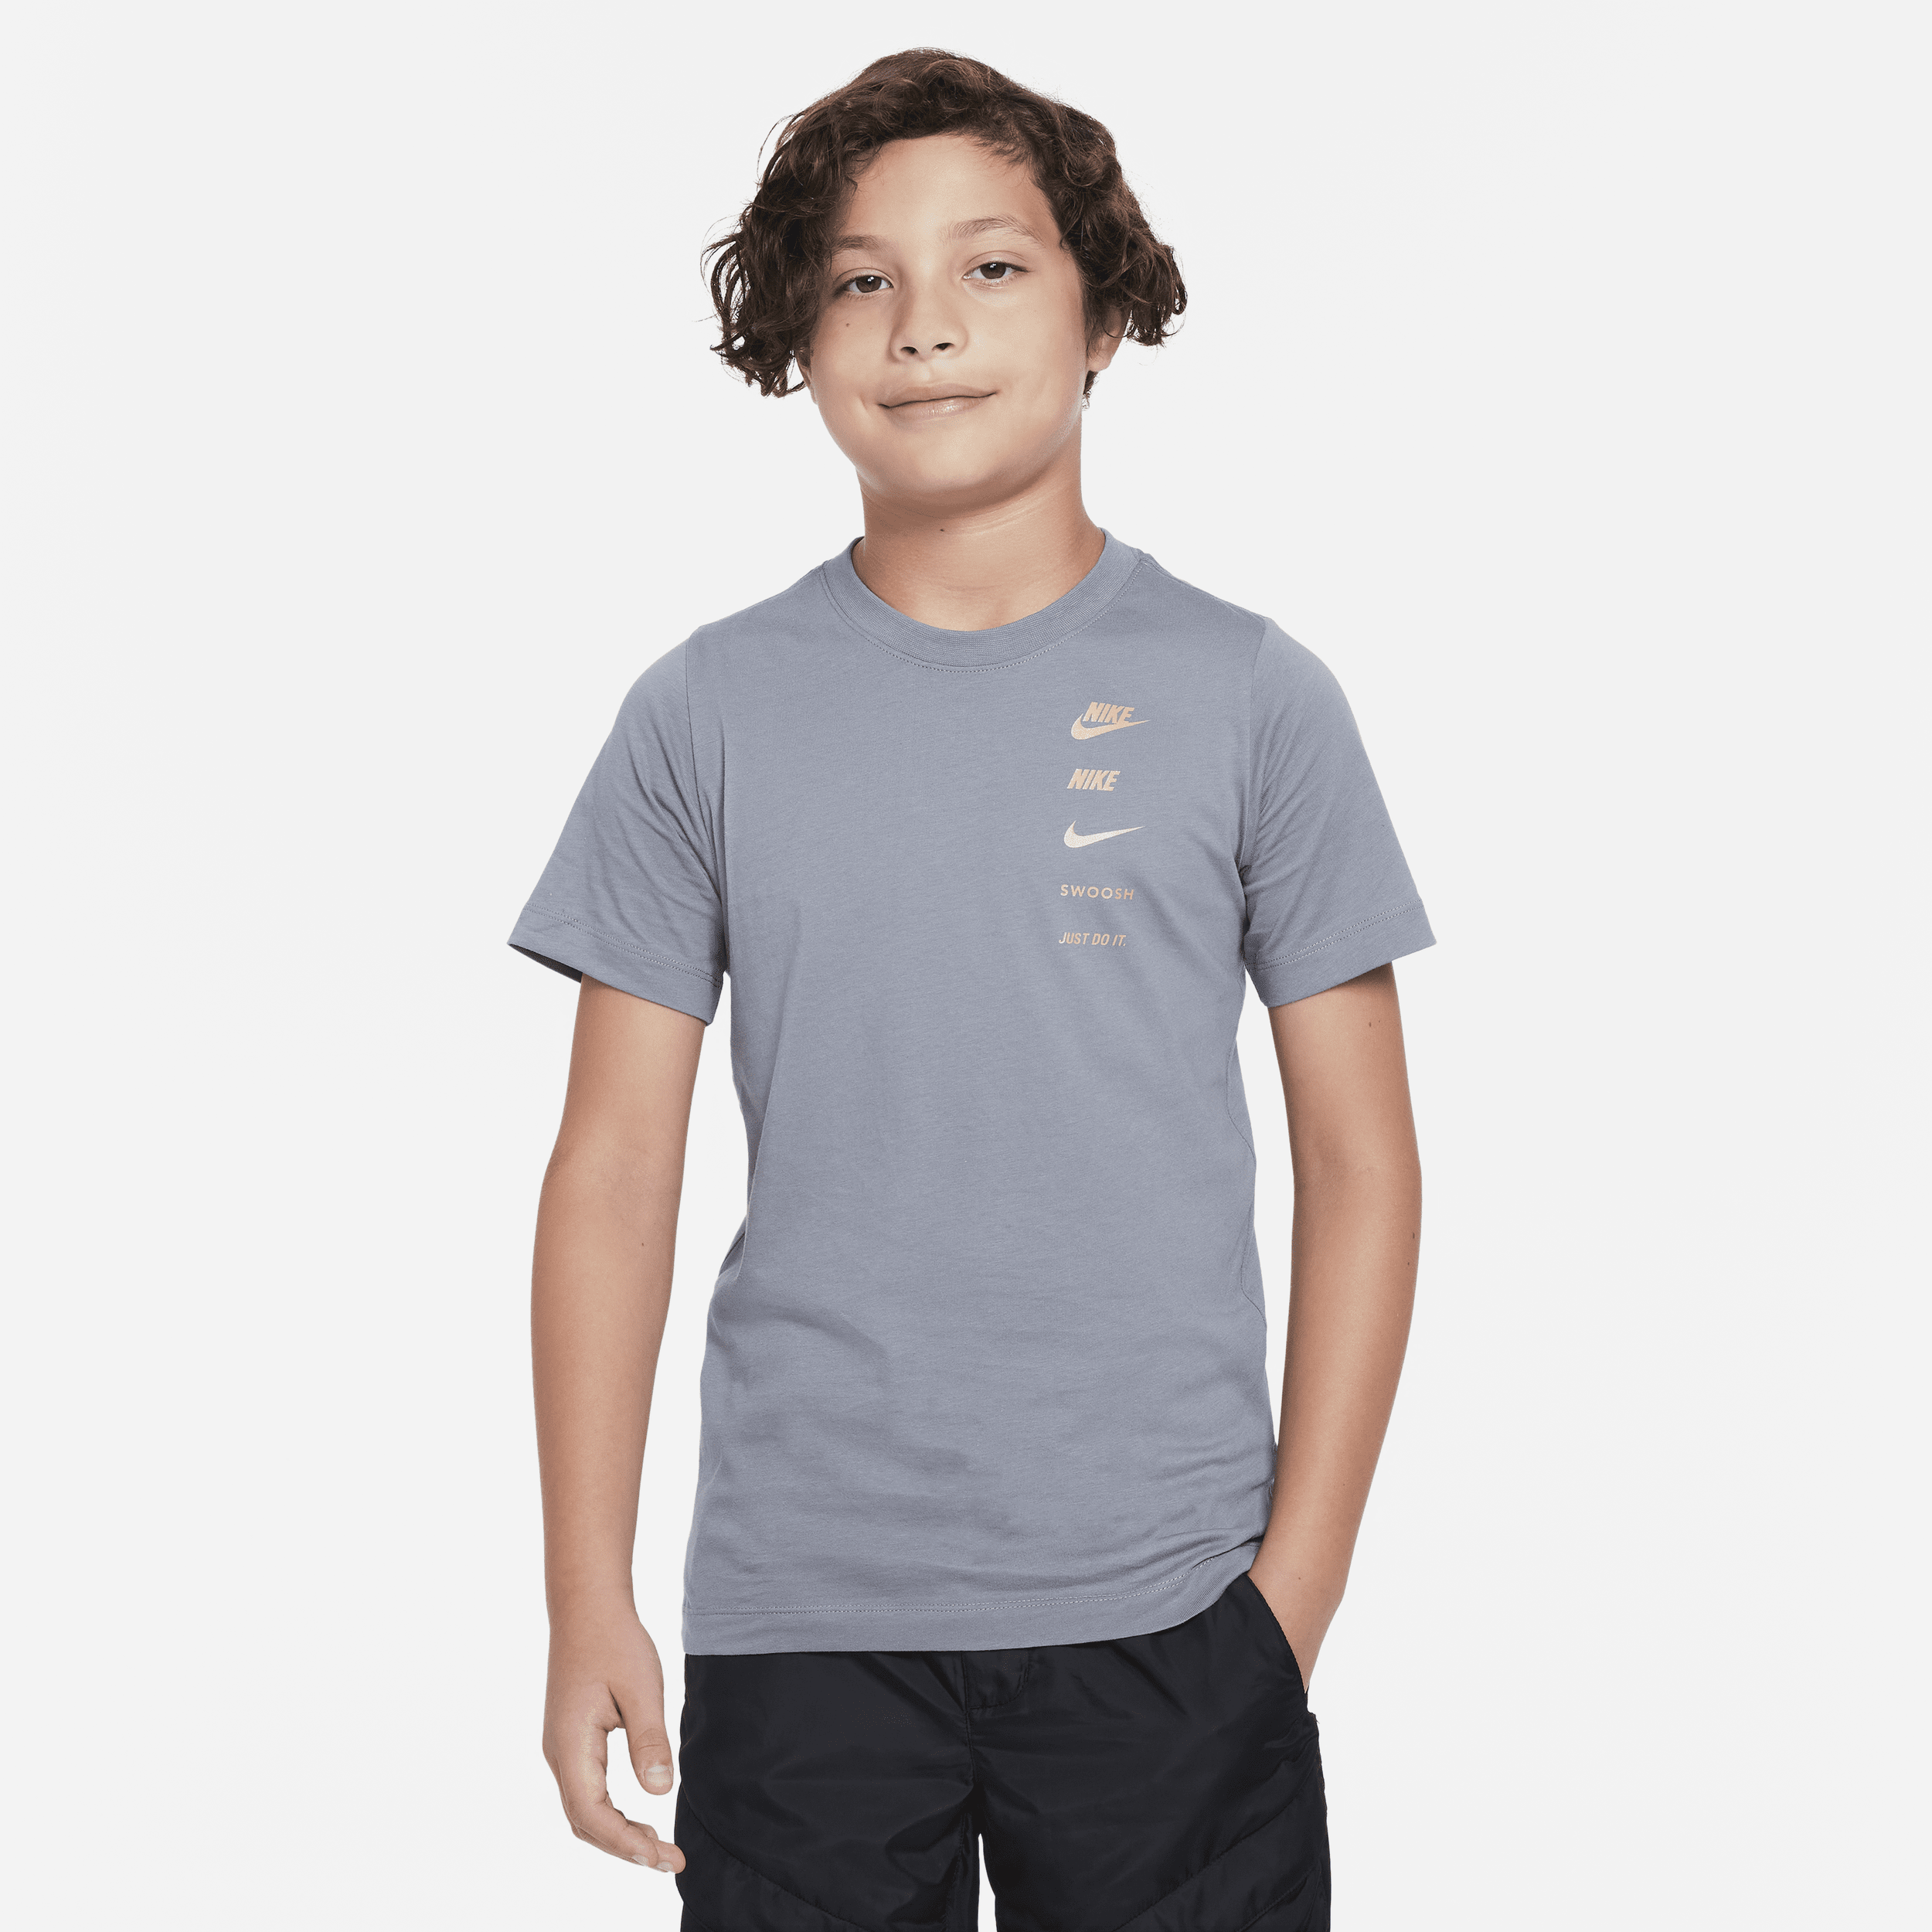 Grafisk Nike Sportswear-T-shirt til større børn (drenge) - grå